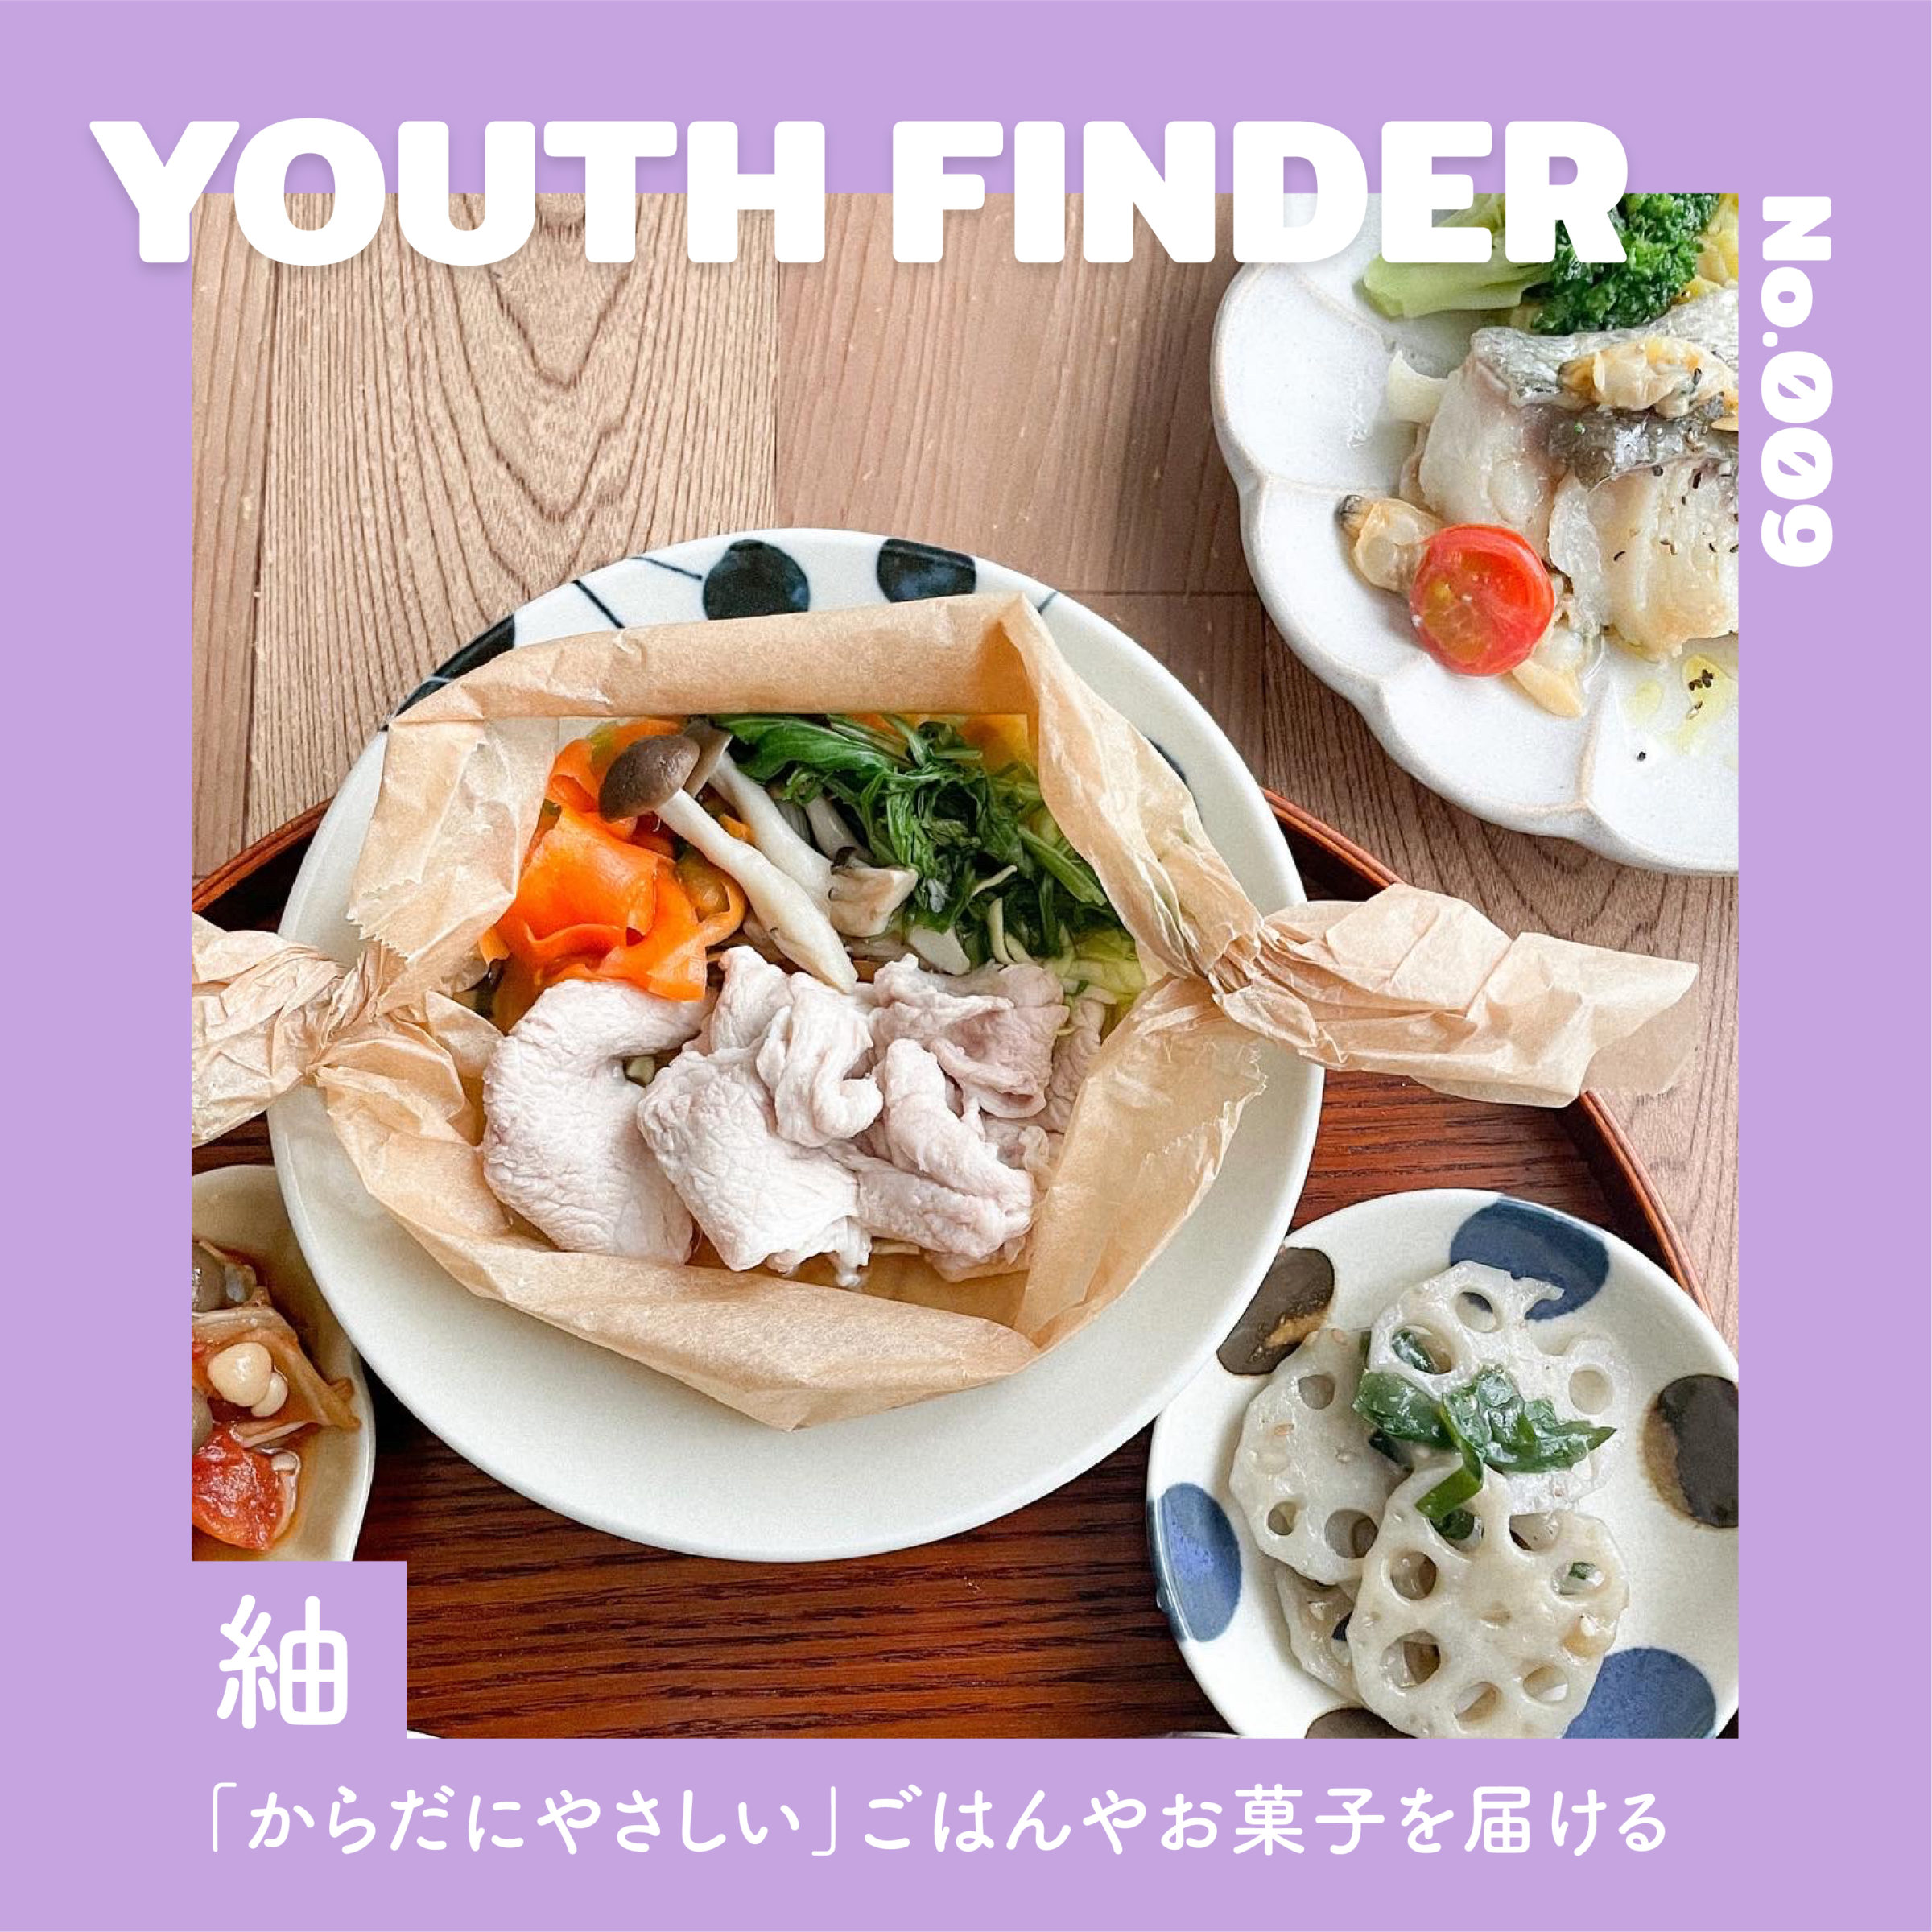 「からだにやさしい」をコンセプトにごはんやお菓子を提供している 紬さん【Youth Finder】の画像